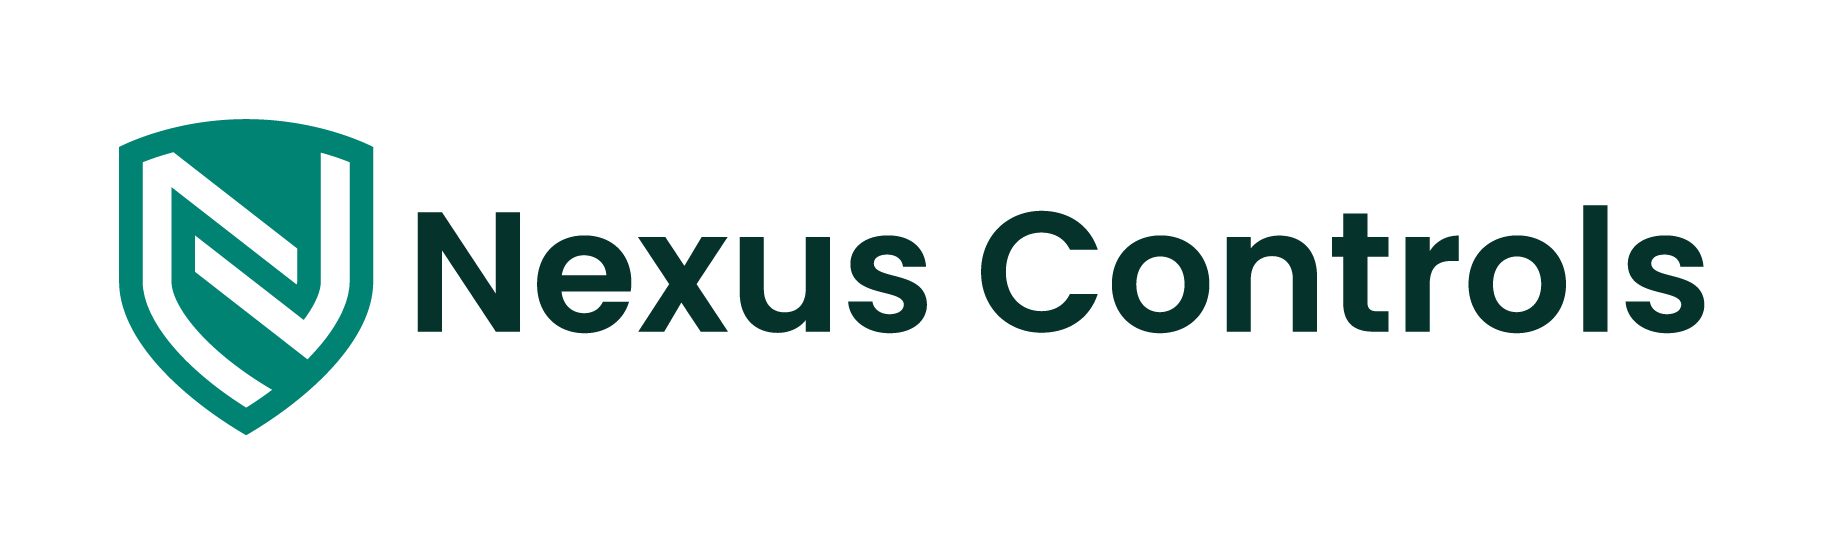 Nexus Controls Accueil